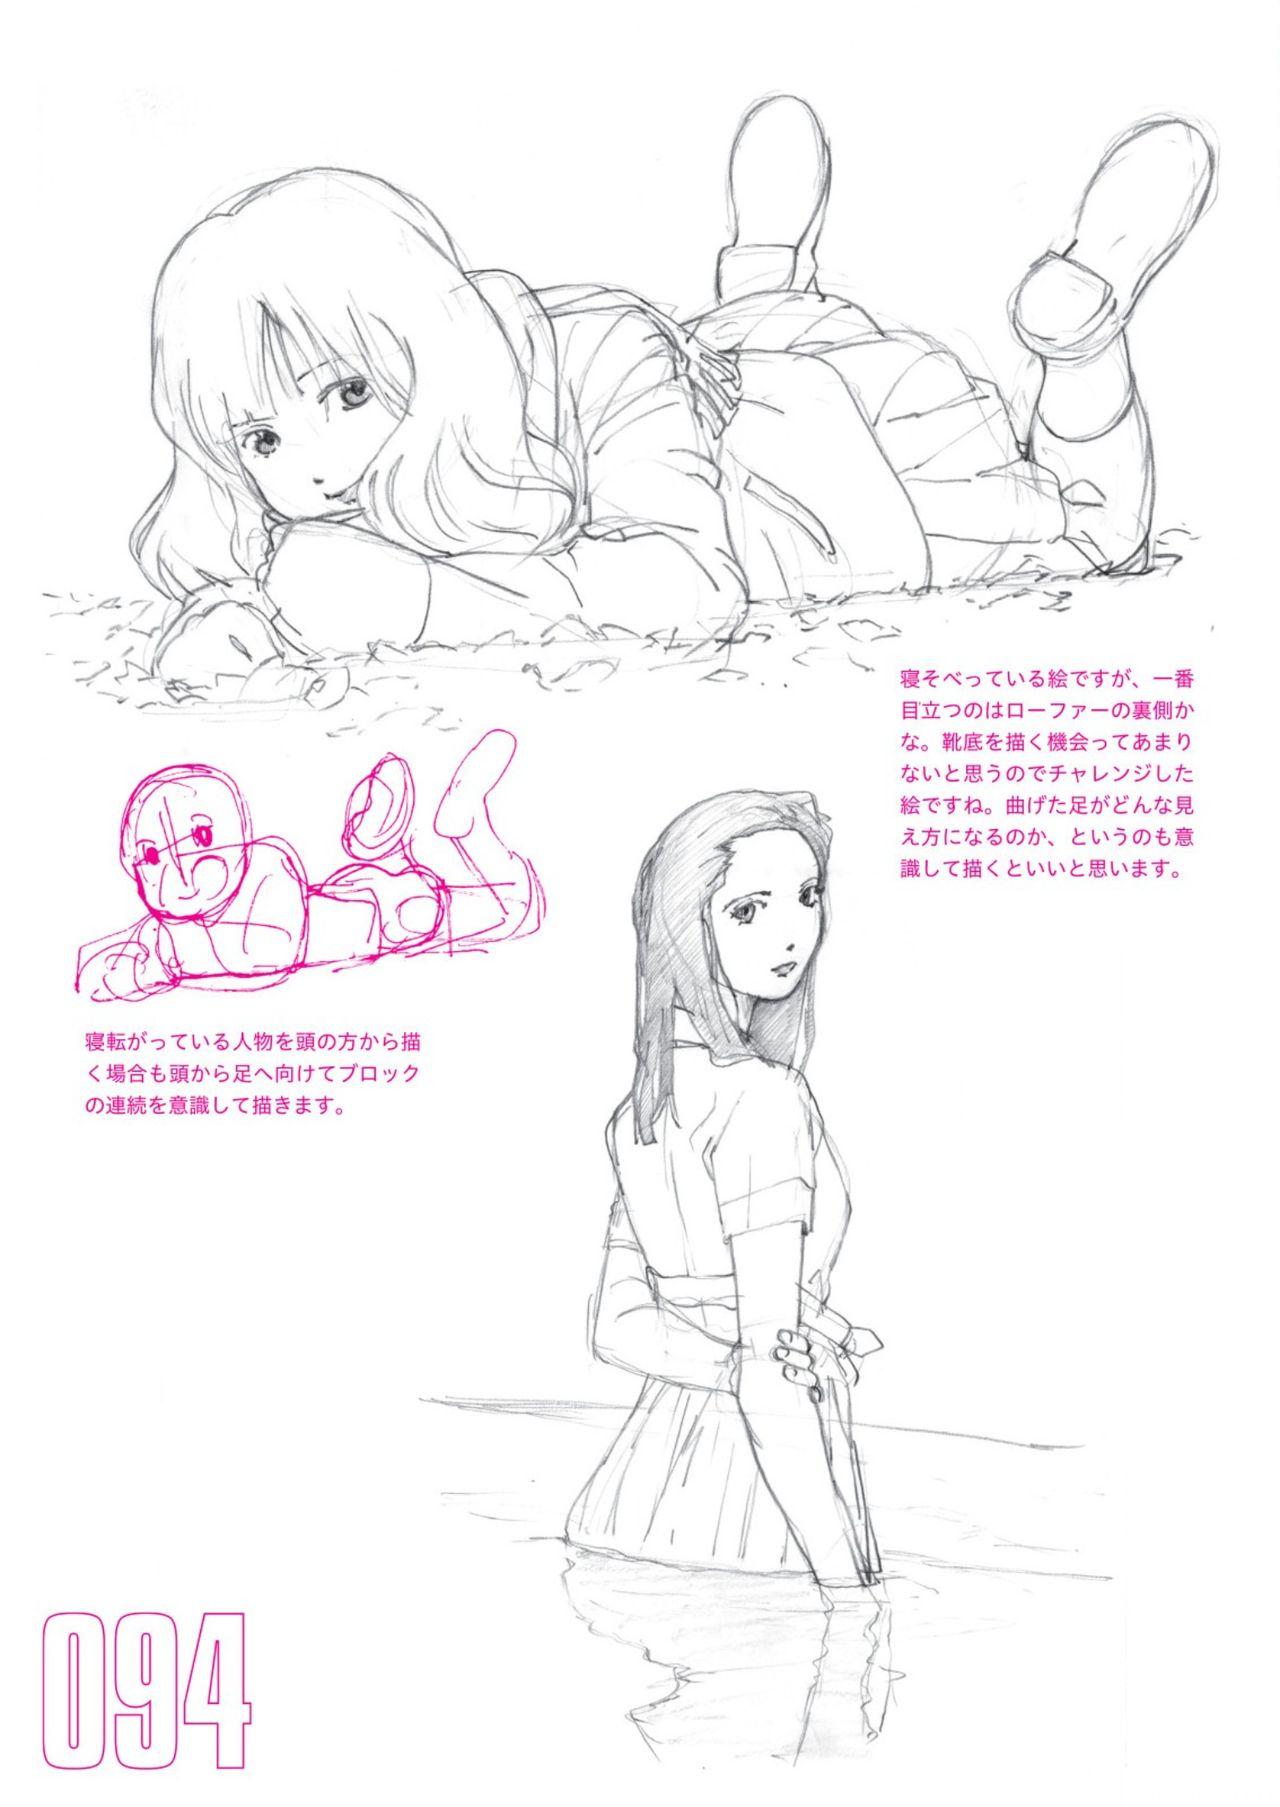 Toru Yoshida Tips for drawing women in 10 minutes 270 Uniforms 95